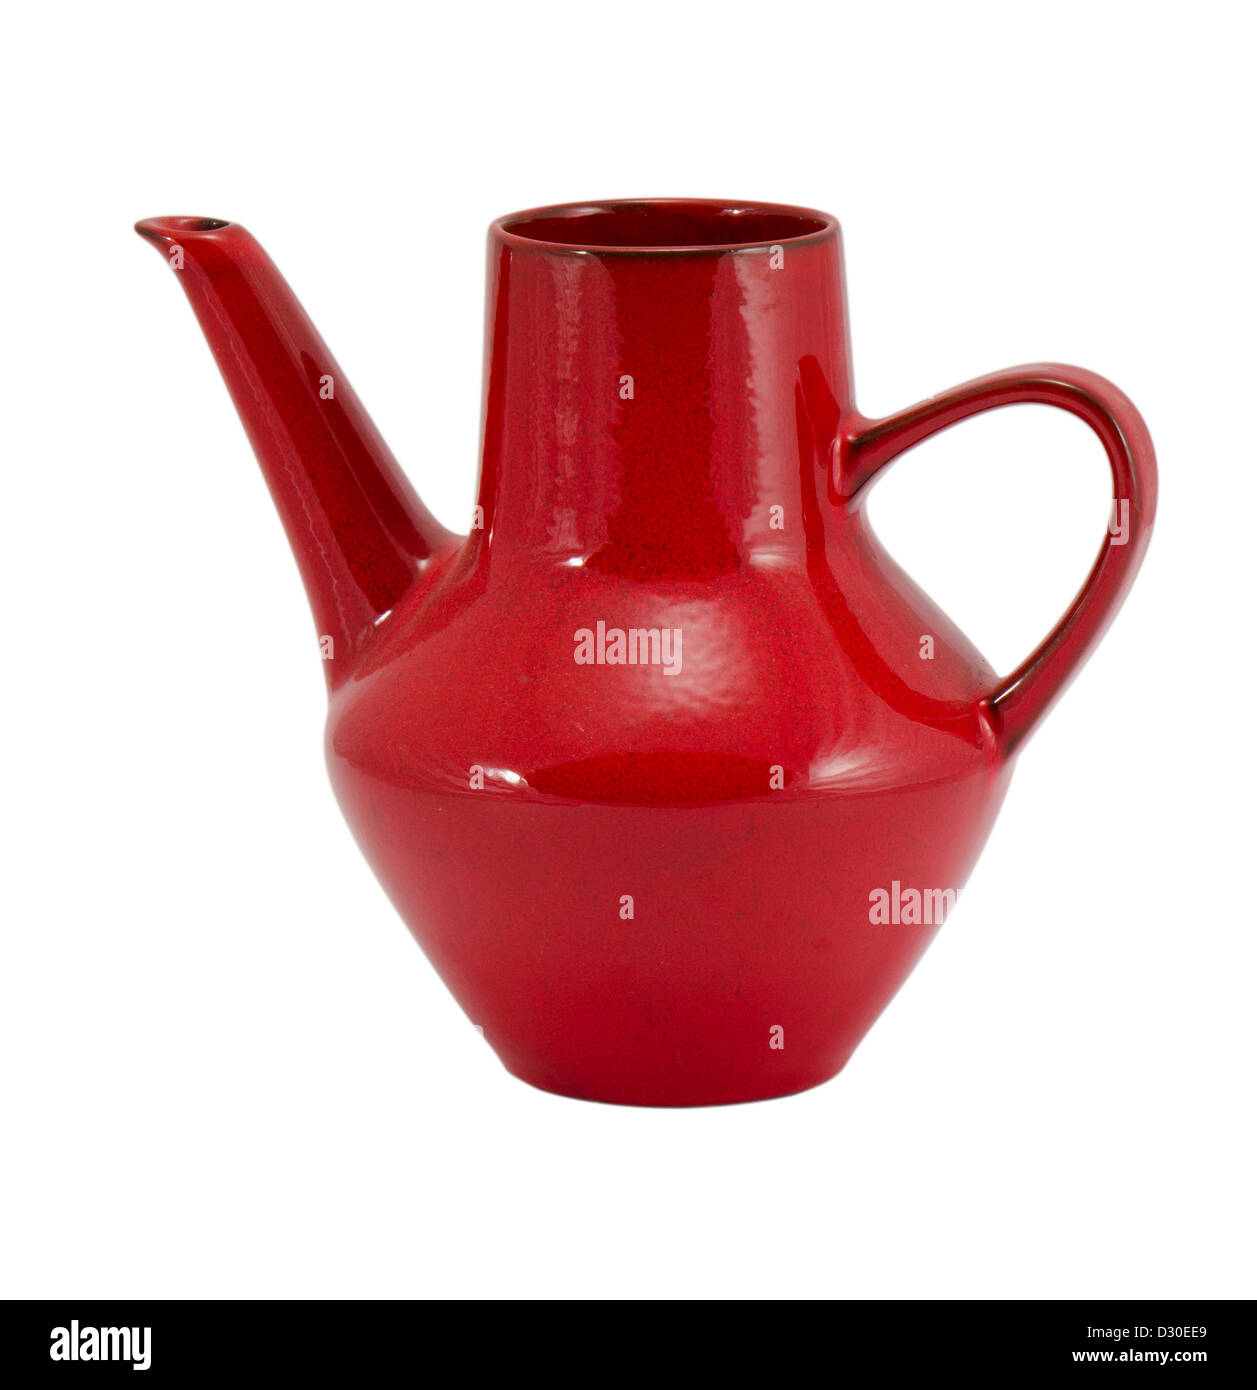 alten Retro-Keramik Ton roten Kanne Krug Glas Blackjack Growler Teekanne mit Griff isolierten auf weißen Hintergrund Stockfoto